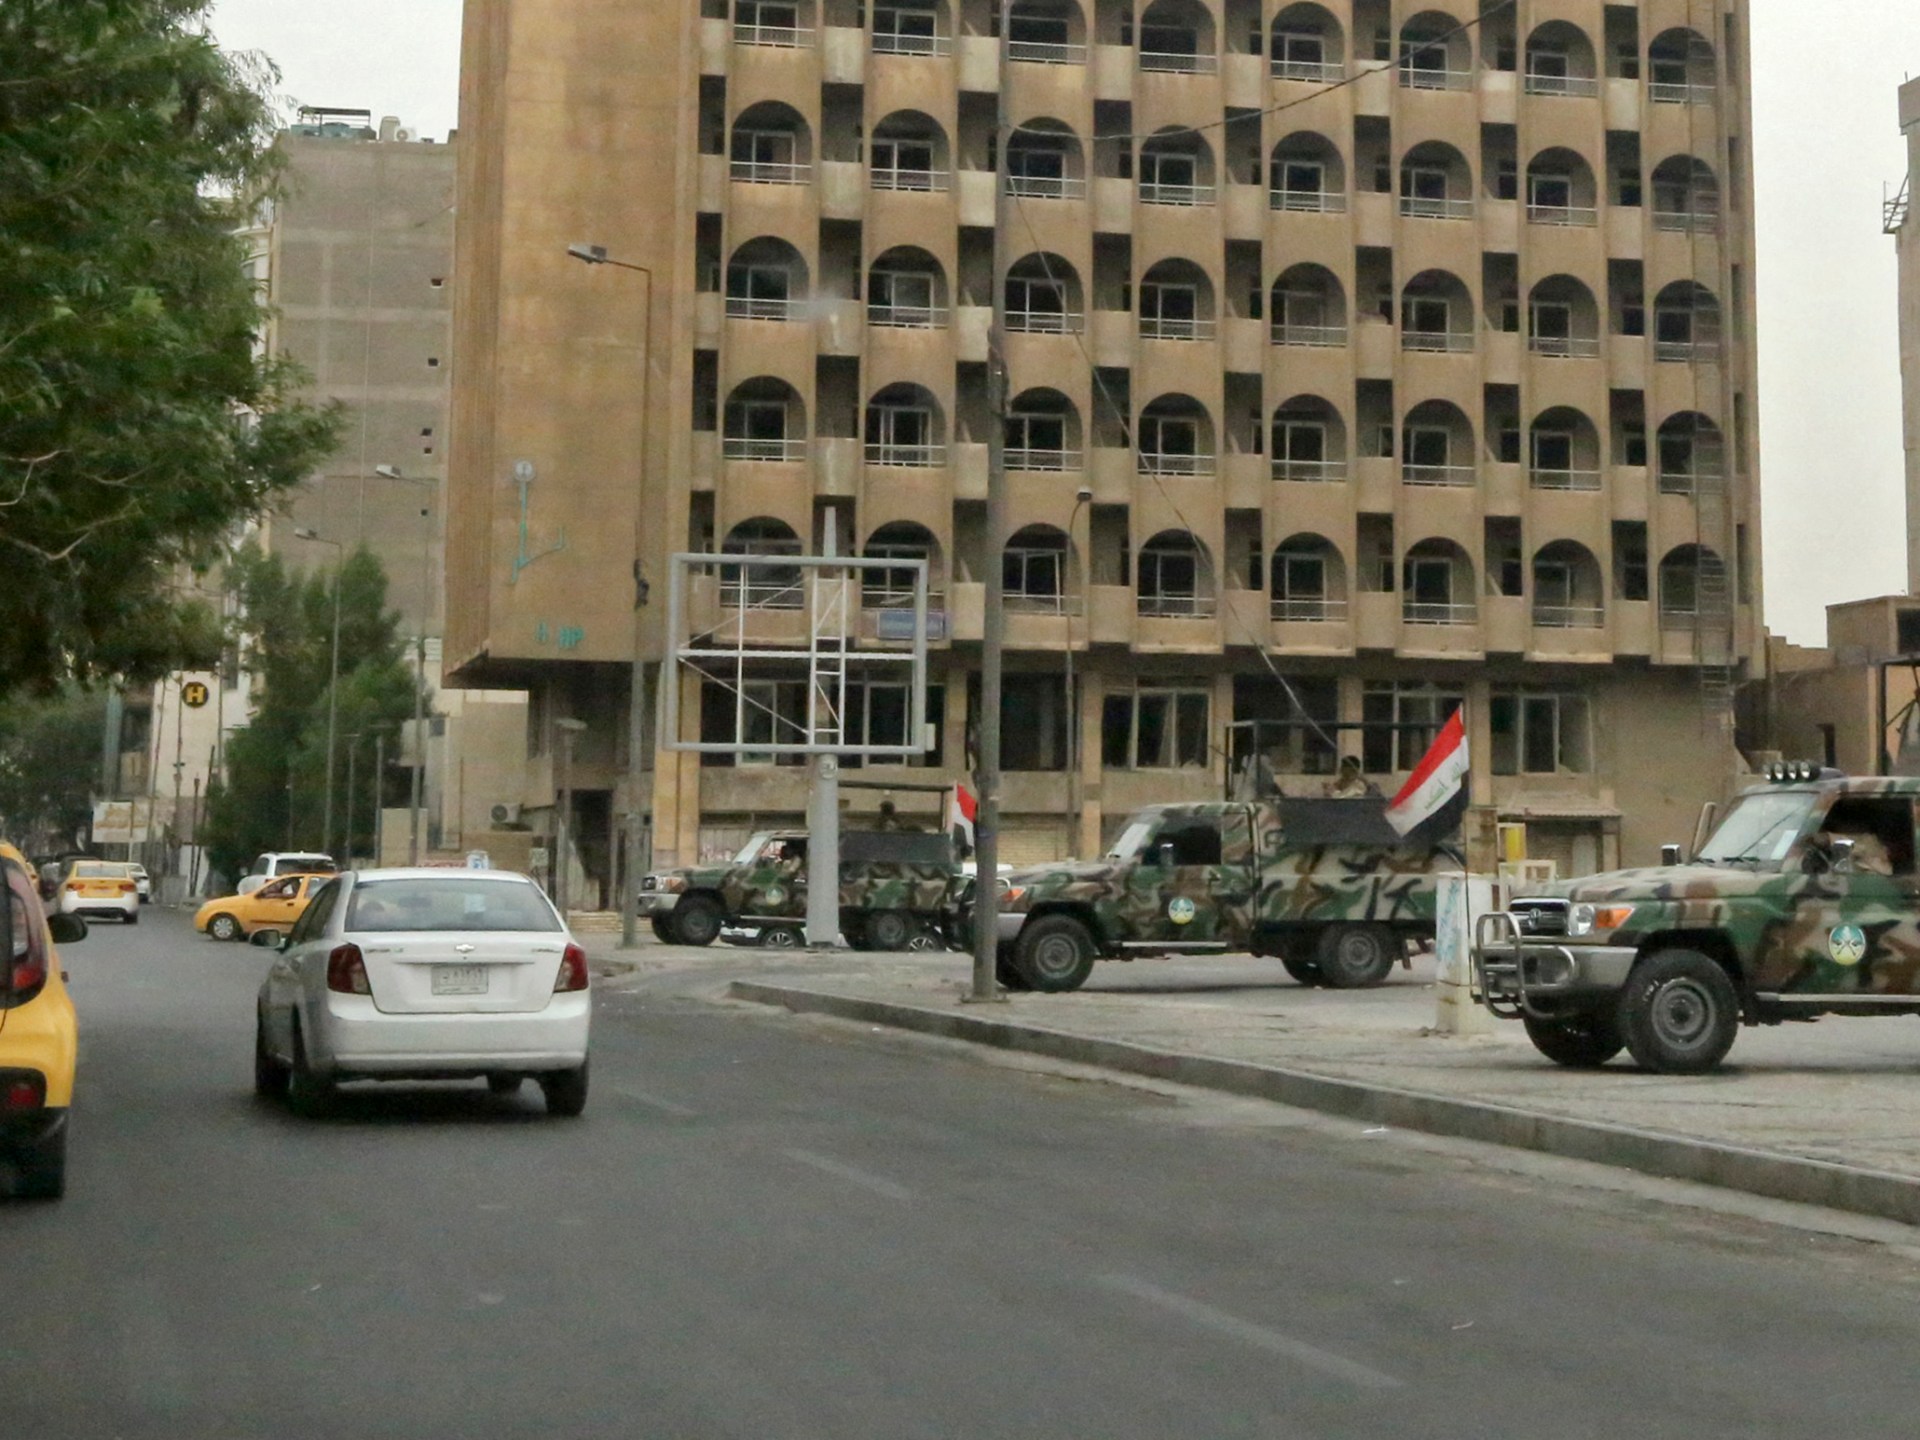 Zprávy o raketách odpálených na americkou ambasádu v zelené zóně v irácké metropoli  Zprávy o izraelsko-palestinském konfliktu